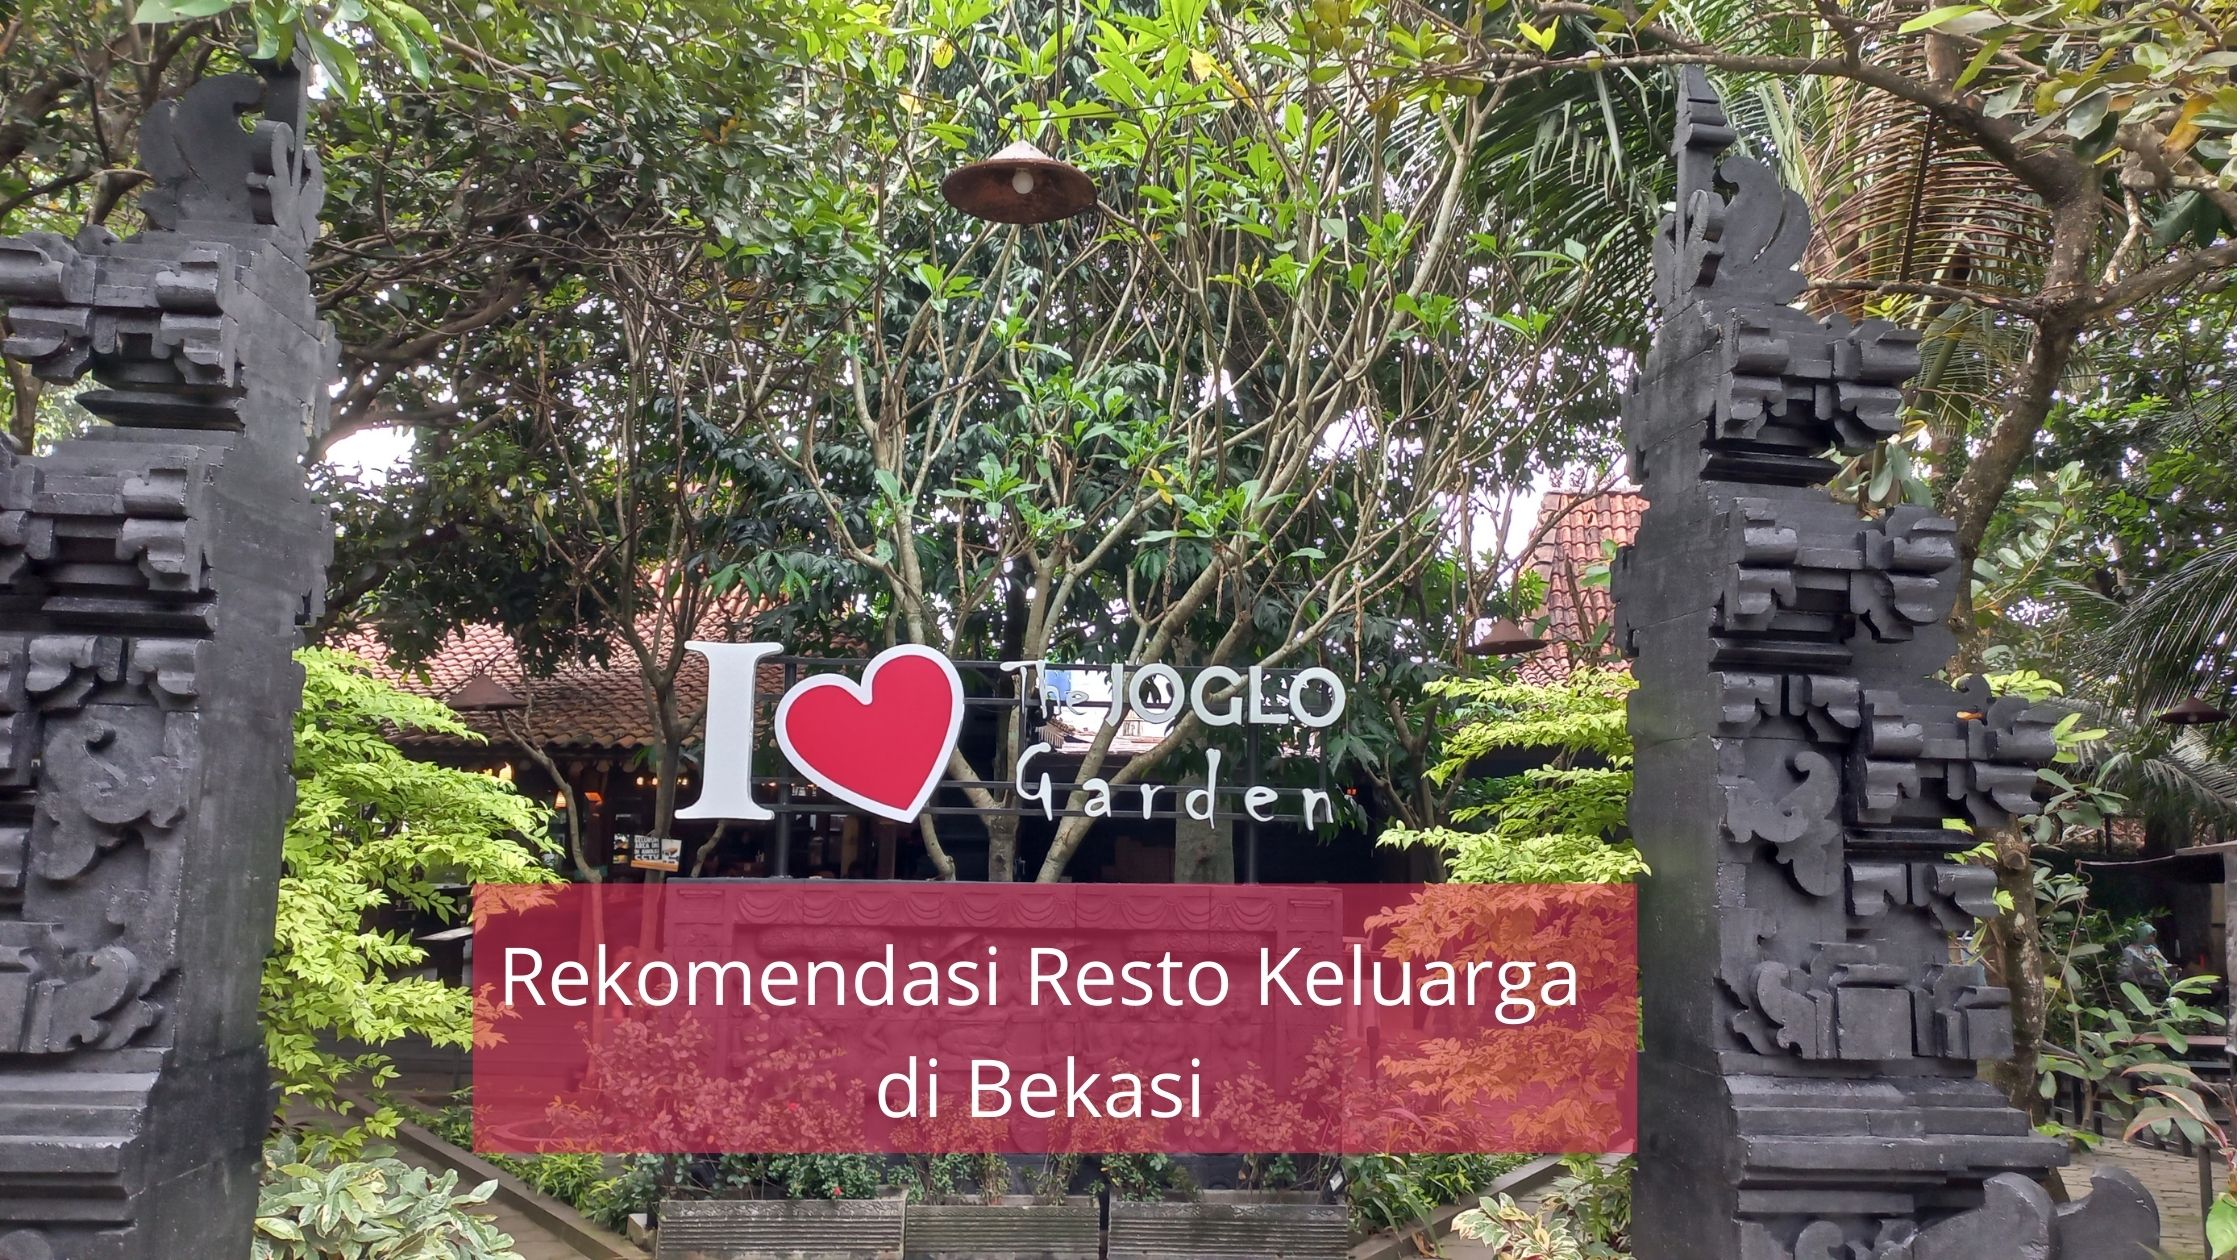 The Joglo Garden Bekasi